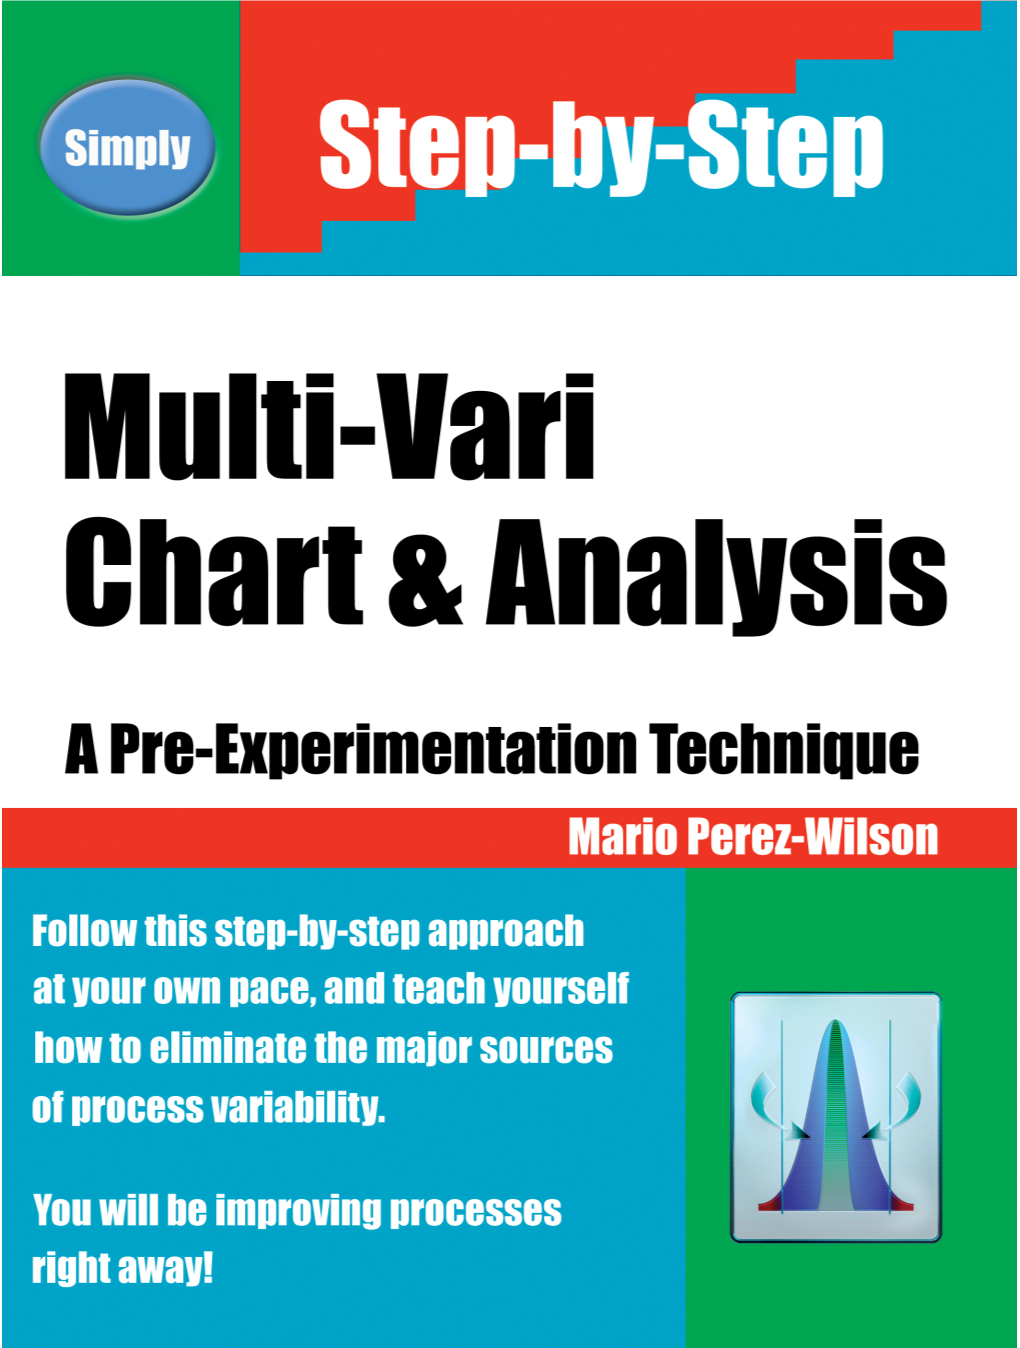 Multi-Vari Charts and Analysis